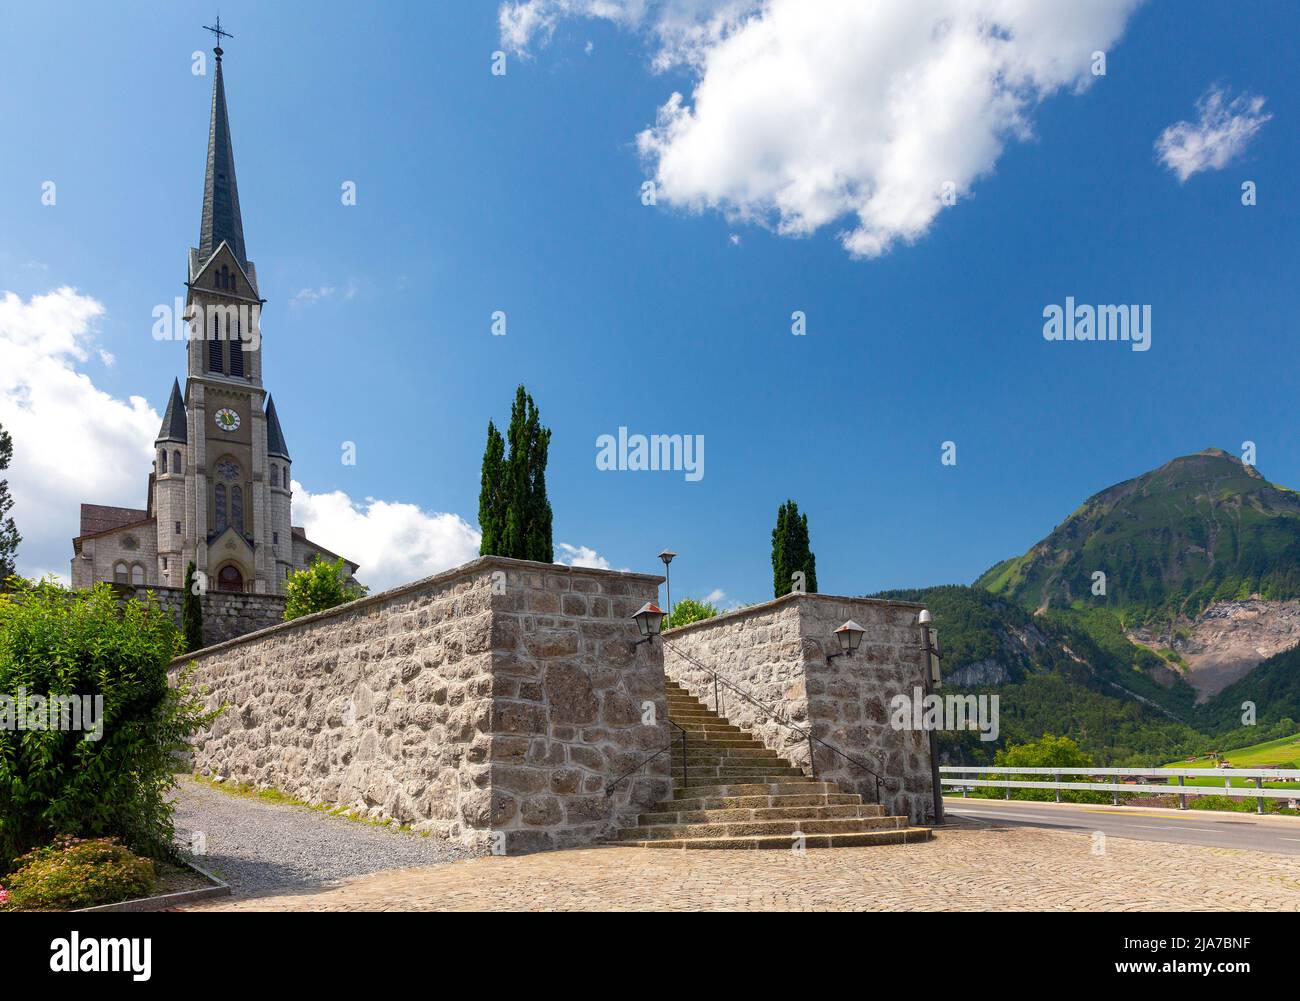 Vista panoramica di una chiesa gotica in un villaggio svizzero in una giornata di sole. Lungern. Svizzera. Foto Stock